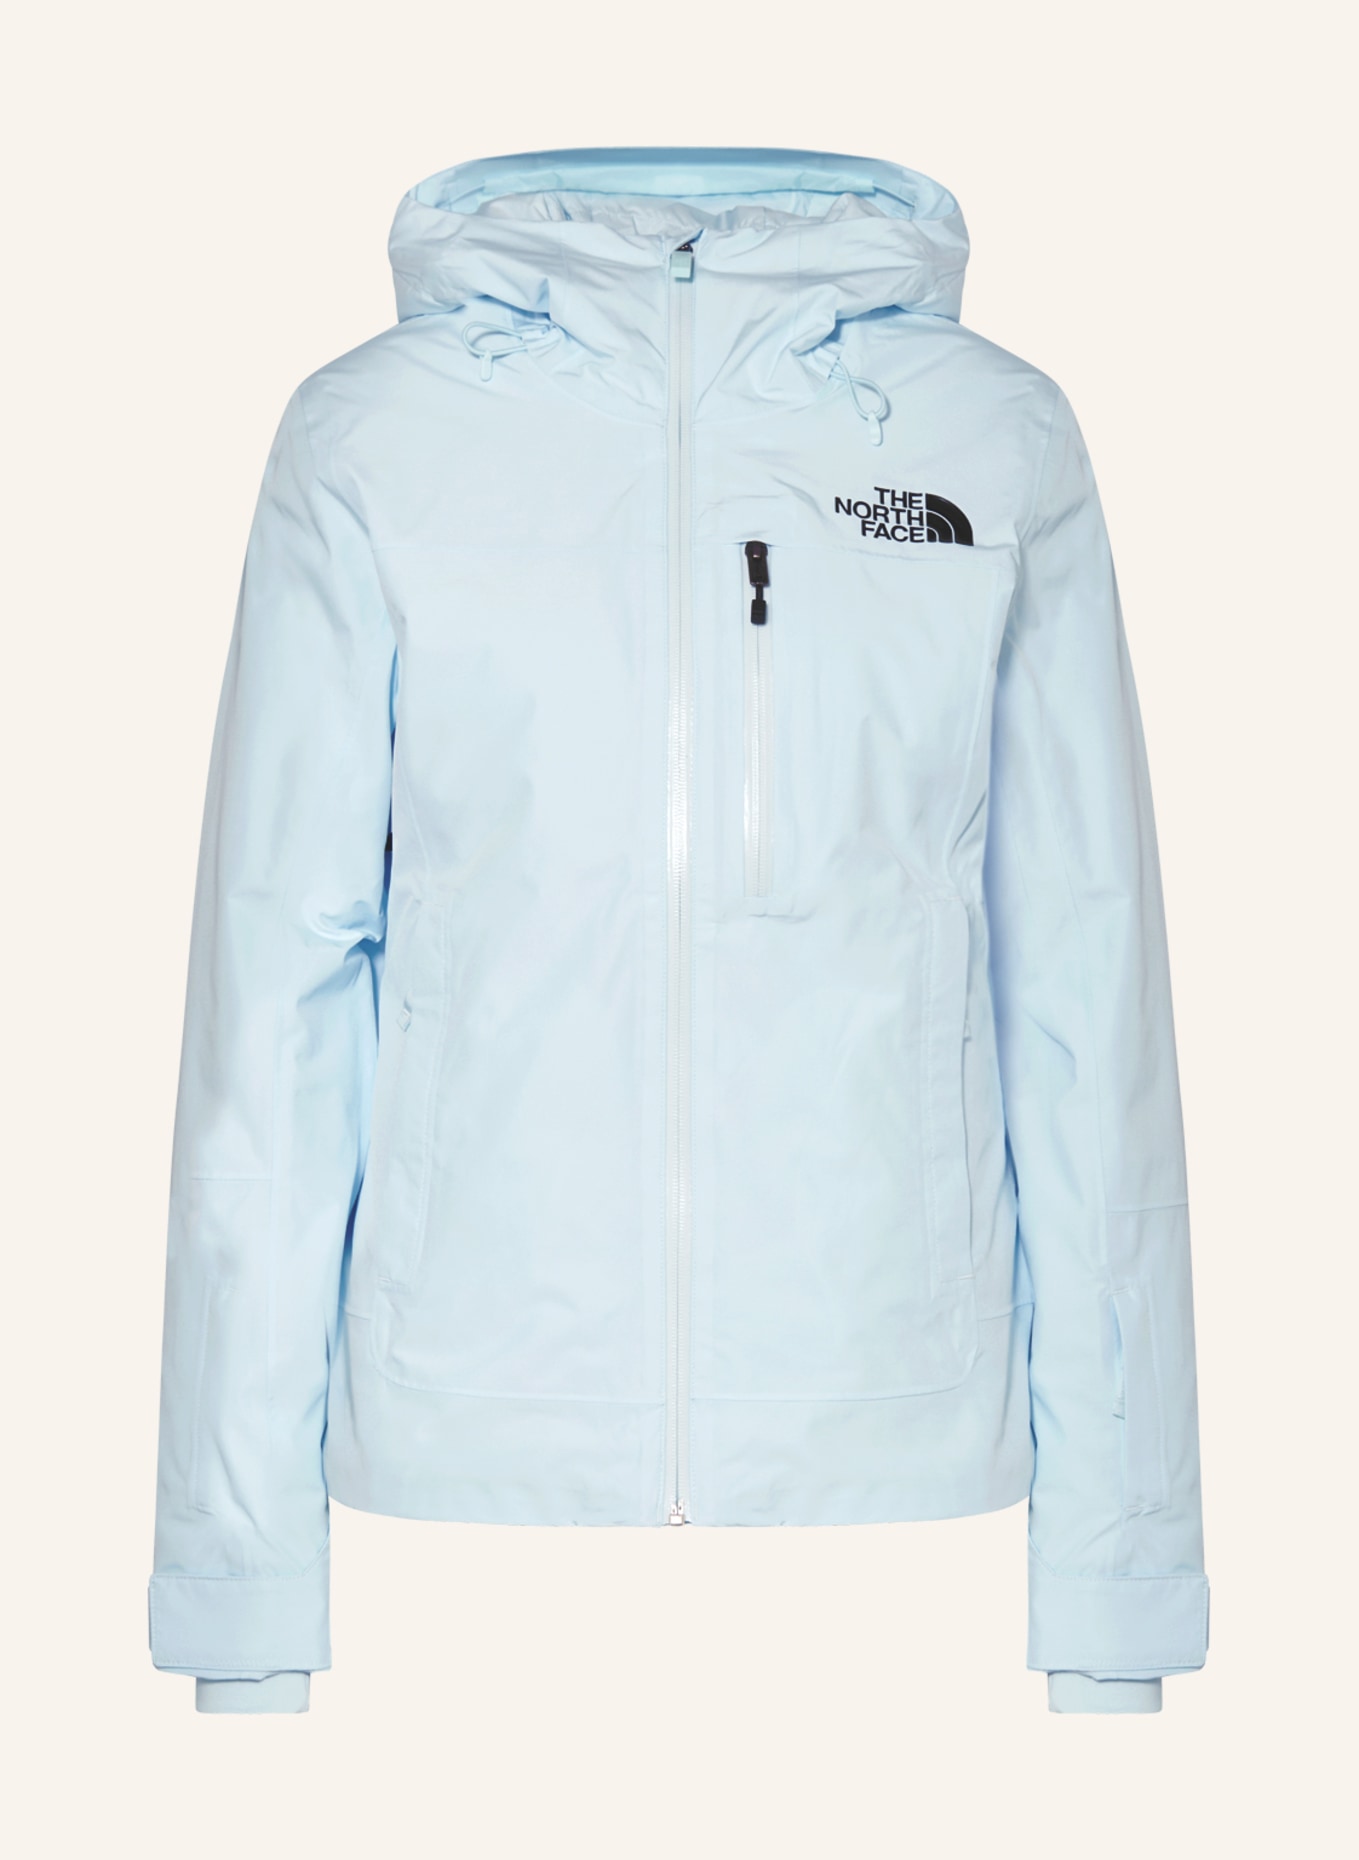 THE NORTH FACE Ski jacket DESCENDIT, Color: LIGHT BLUE (Image 1)